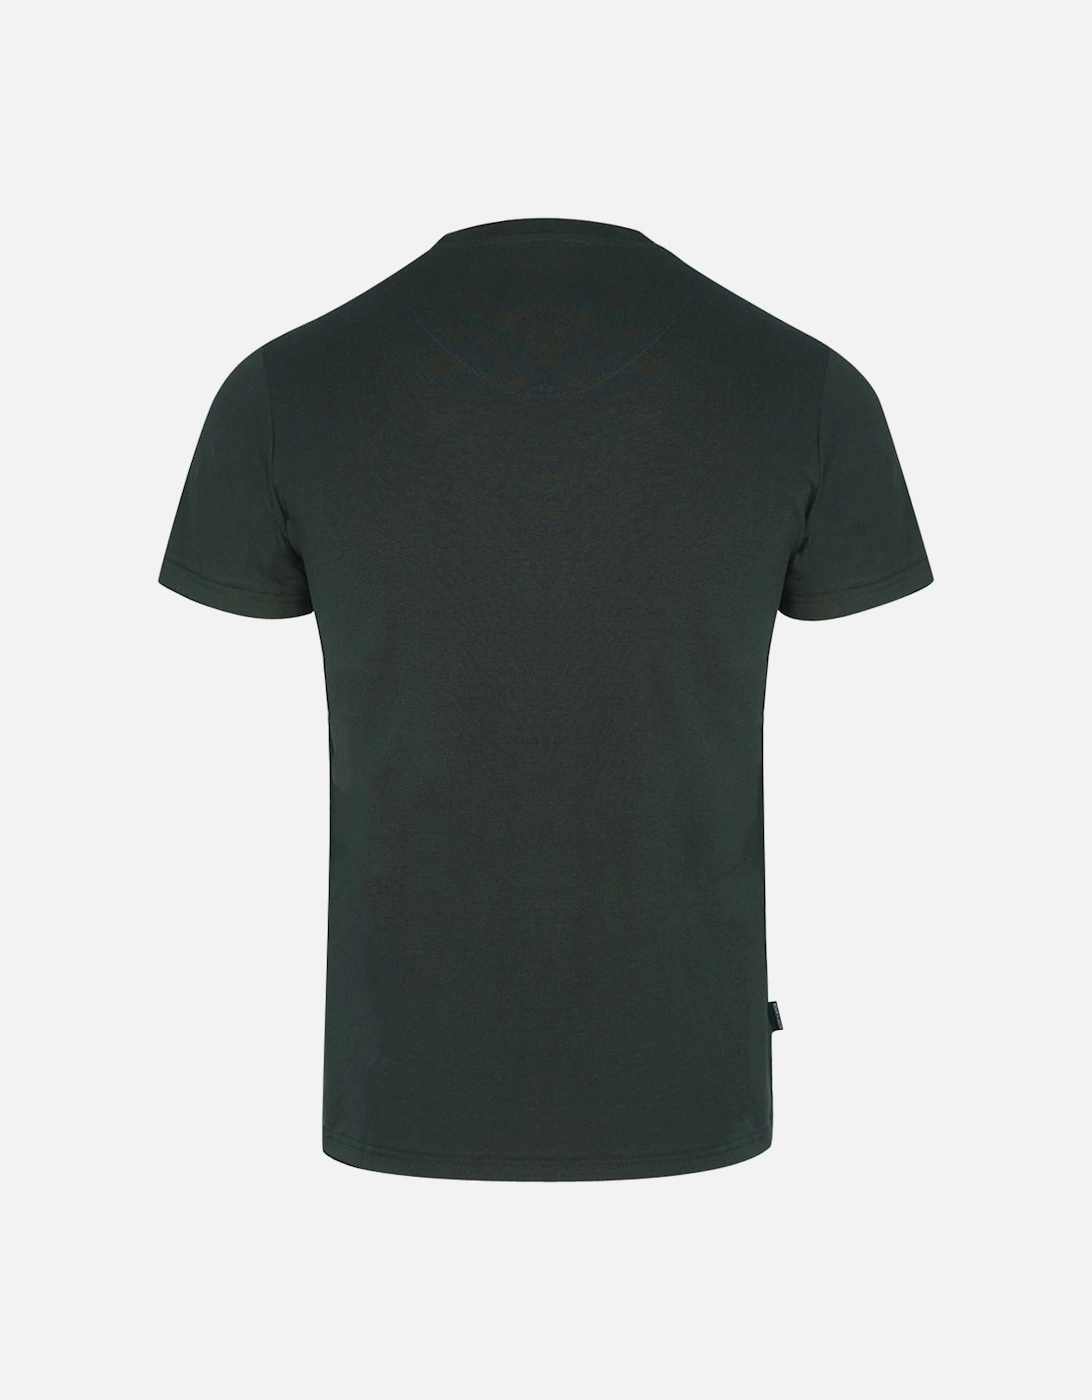 AQ Logo Black T-Shirt